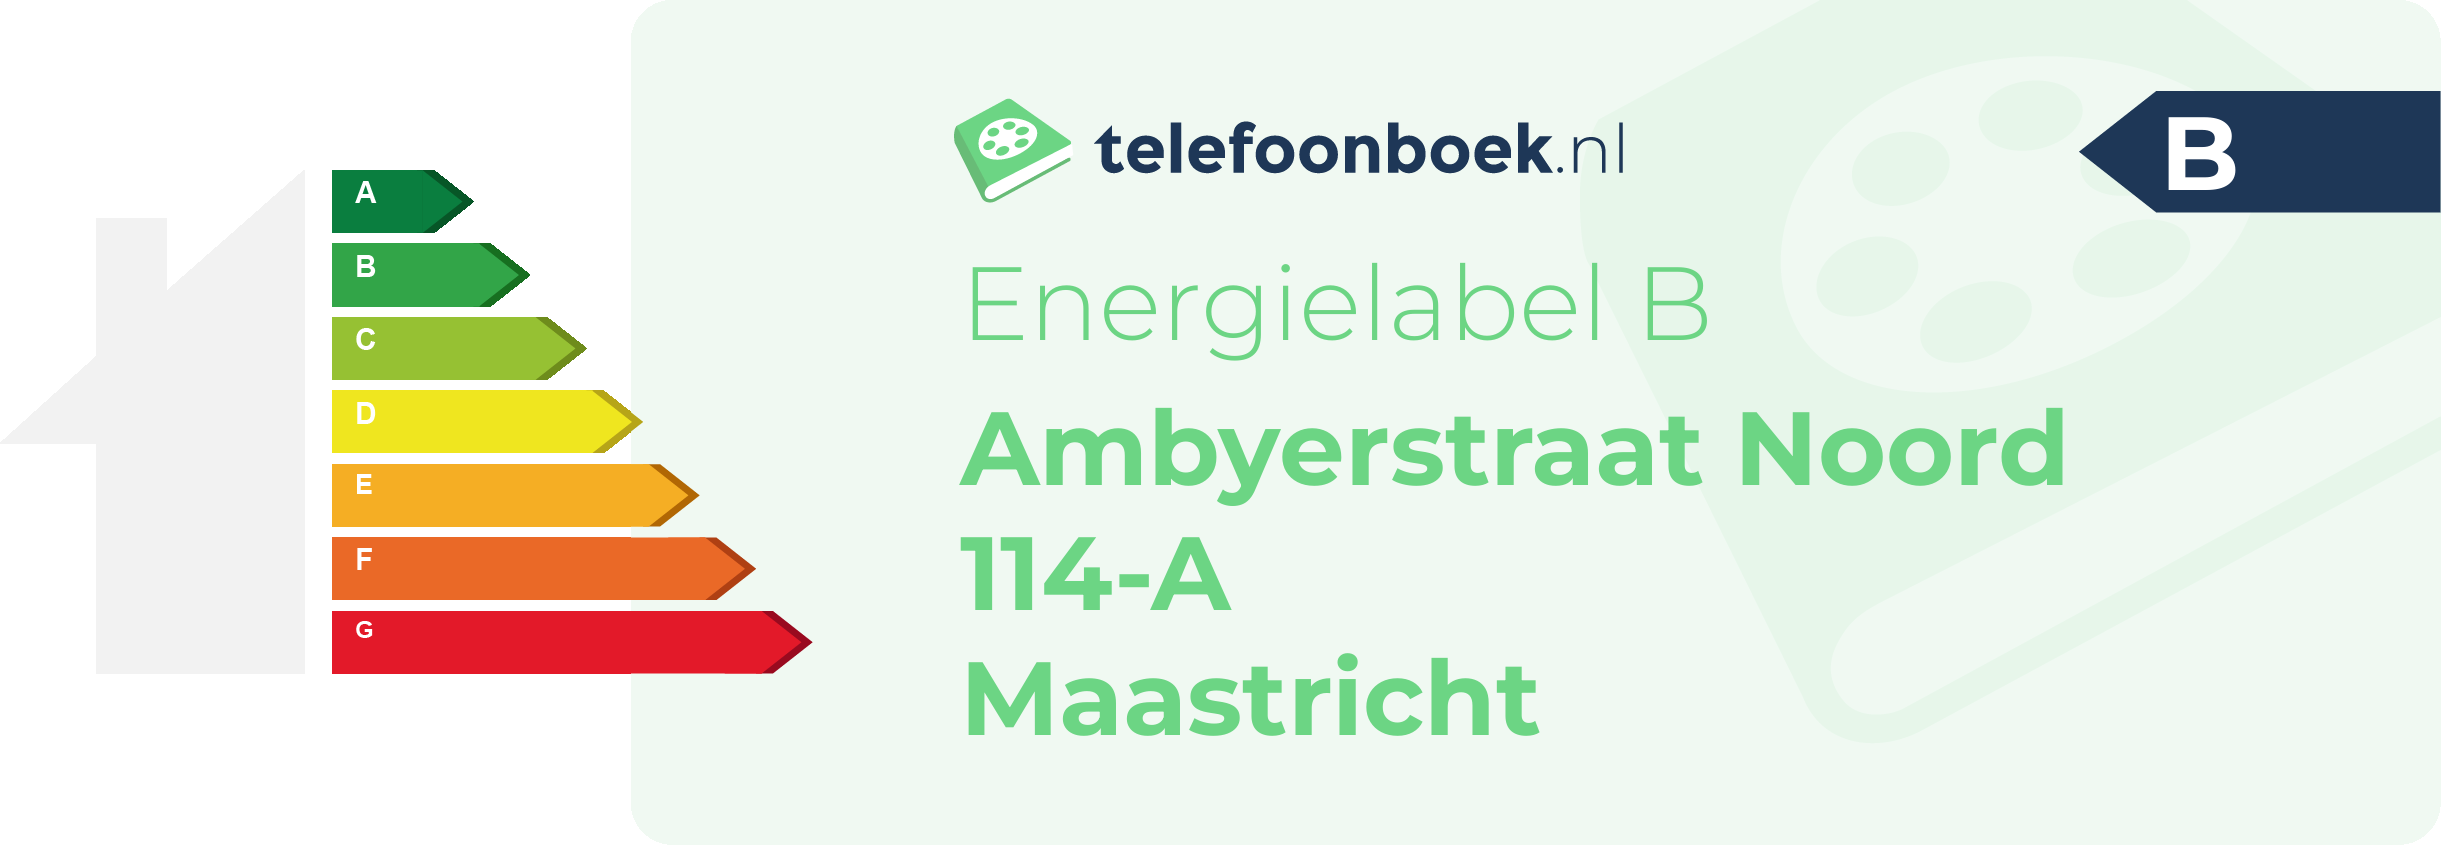 Energielabel Ambyerstraat Noord 114-A Maastricht